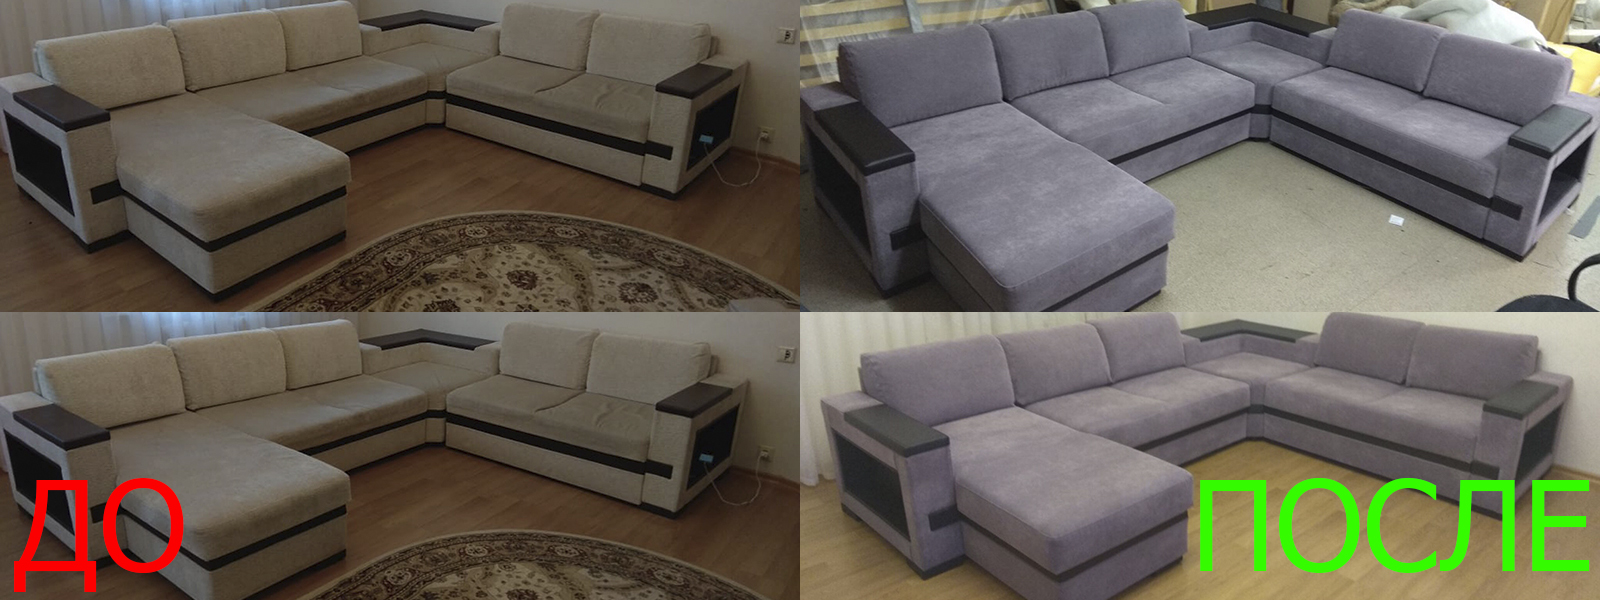 Обтяжка мебели на дому в Казани недорого по адекватной цене